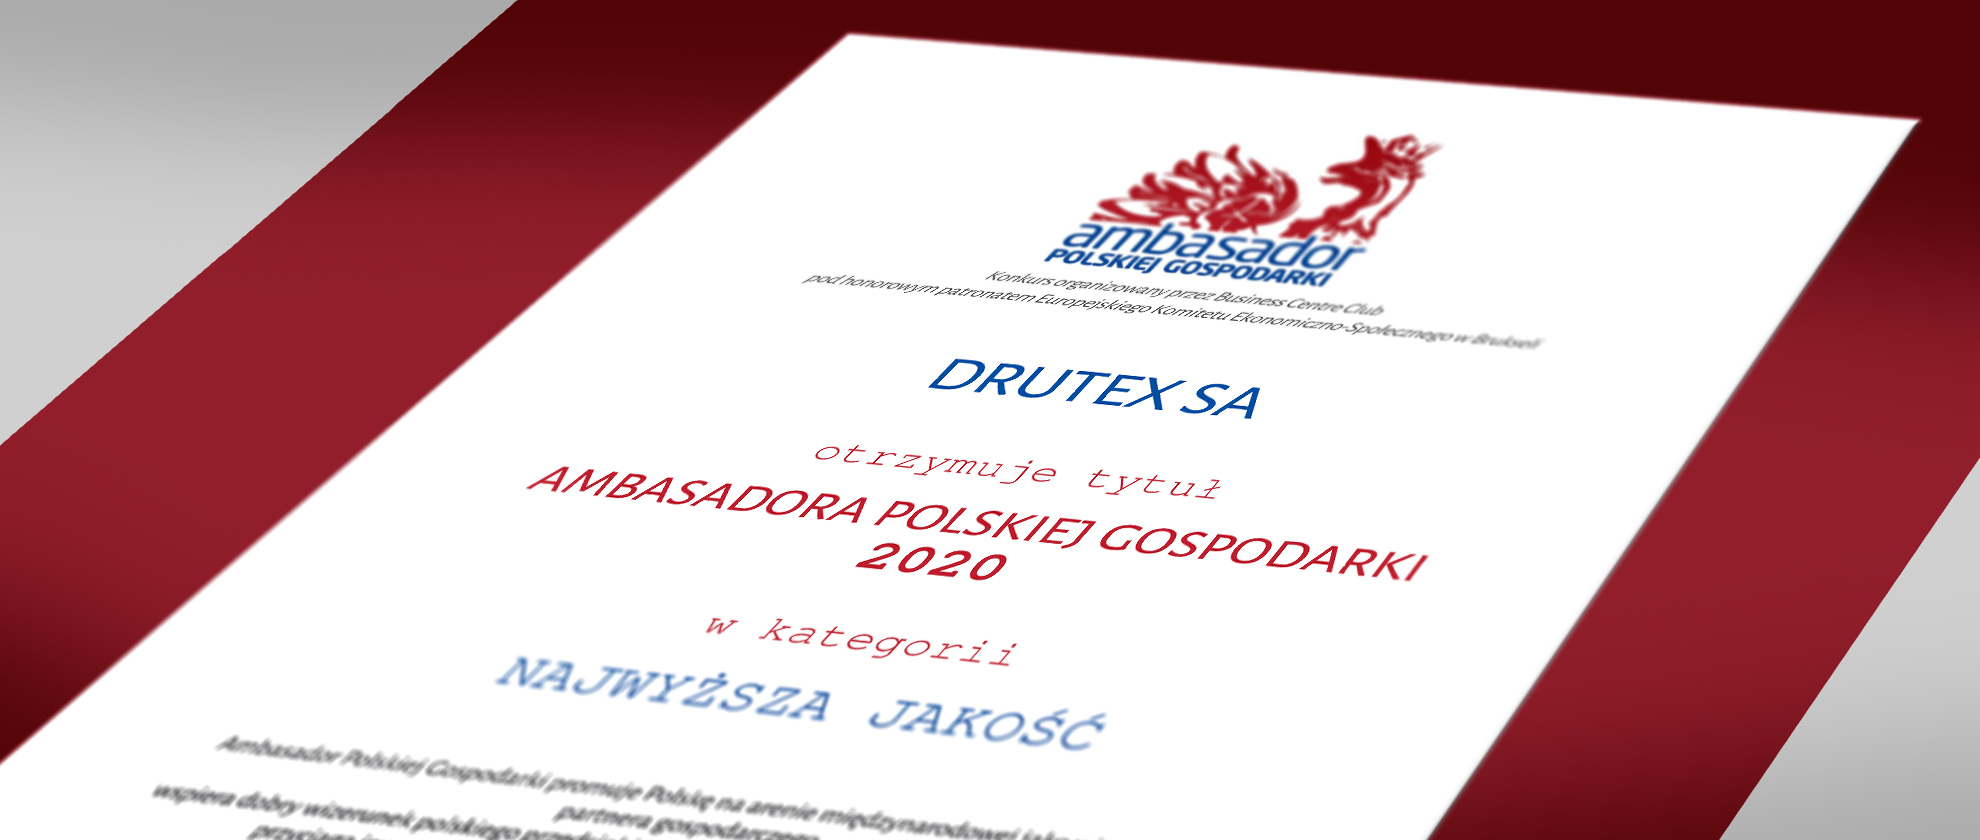 Drutex è l’Ambasciatore dell’economia polacca